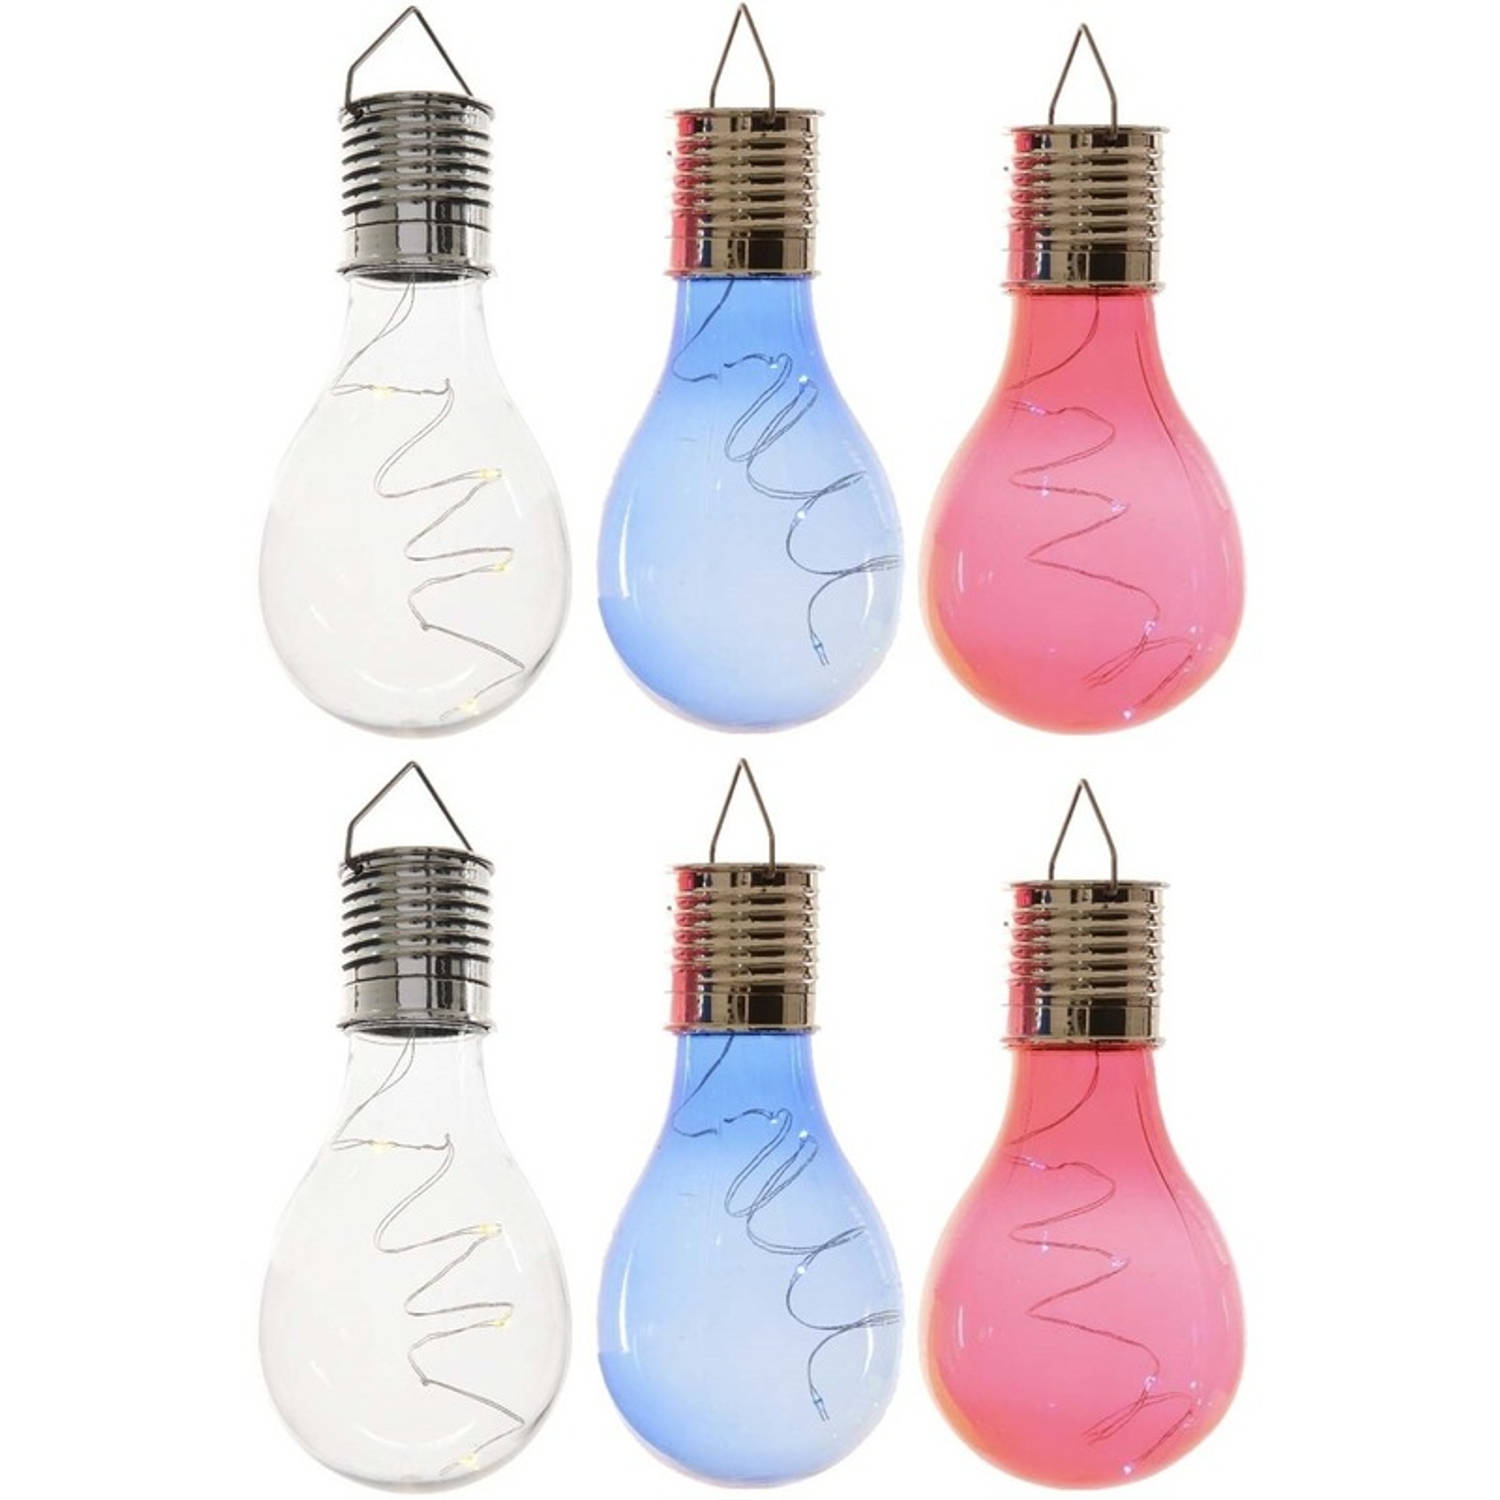 6x Buitenlampen/tuinlampen lampbolletjes/peertjes 14 cm transparant/blauw/rood - Buitenverlichting